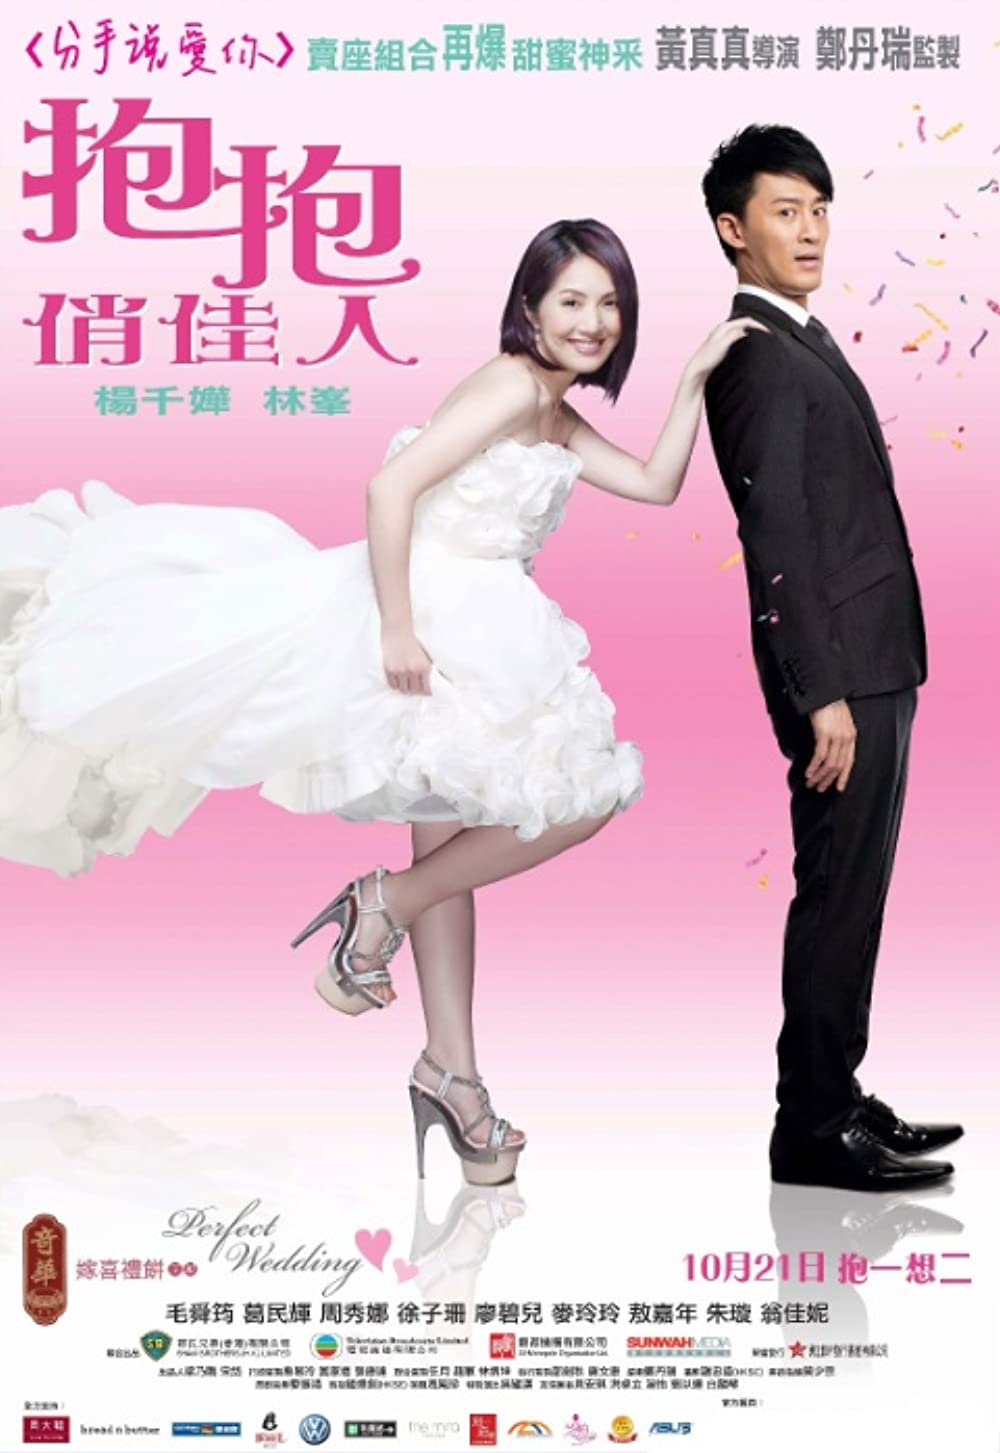 Download Po po chiu kai yan Movie | Download Po Po Chiu Kai Yan Review